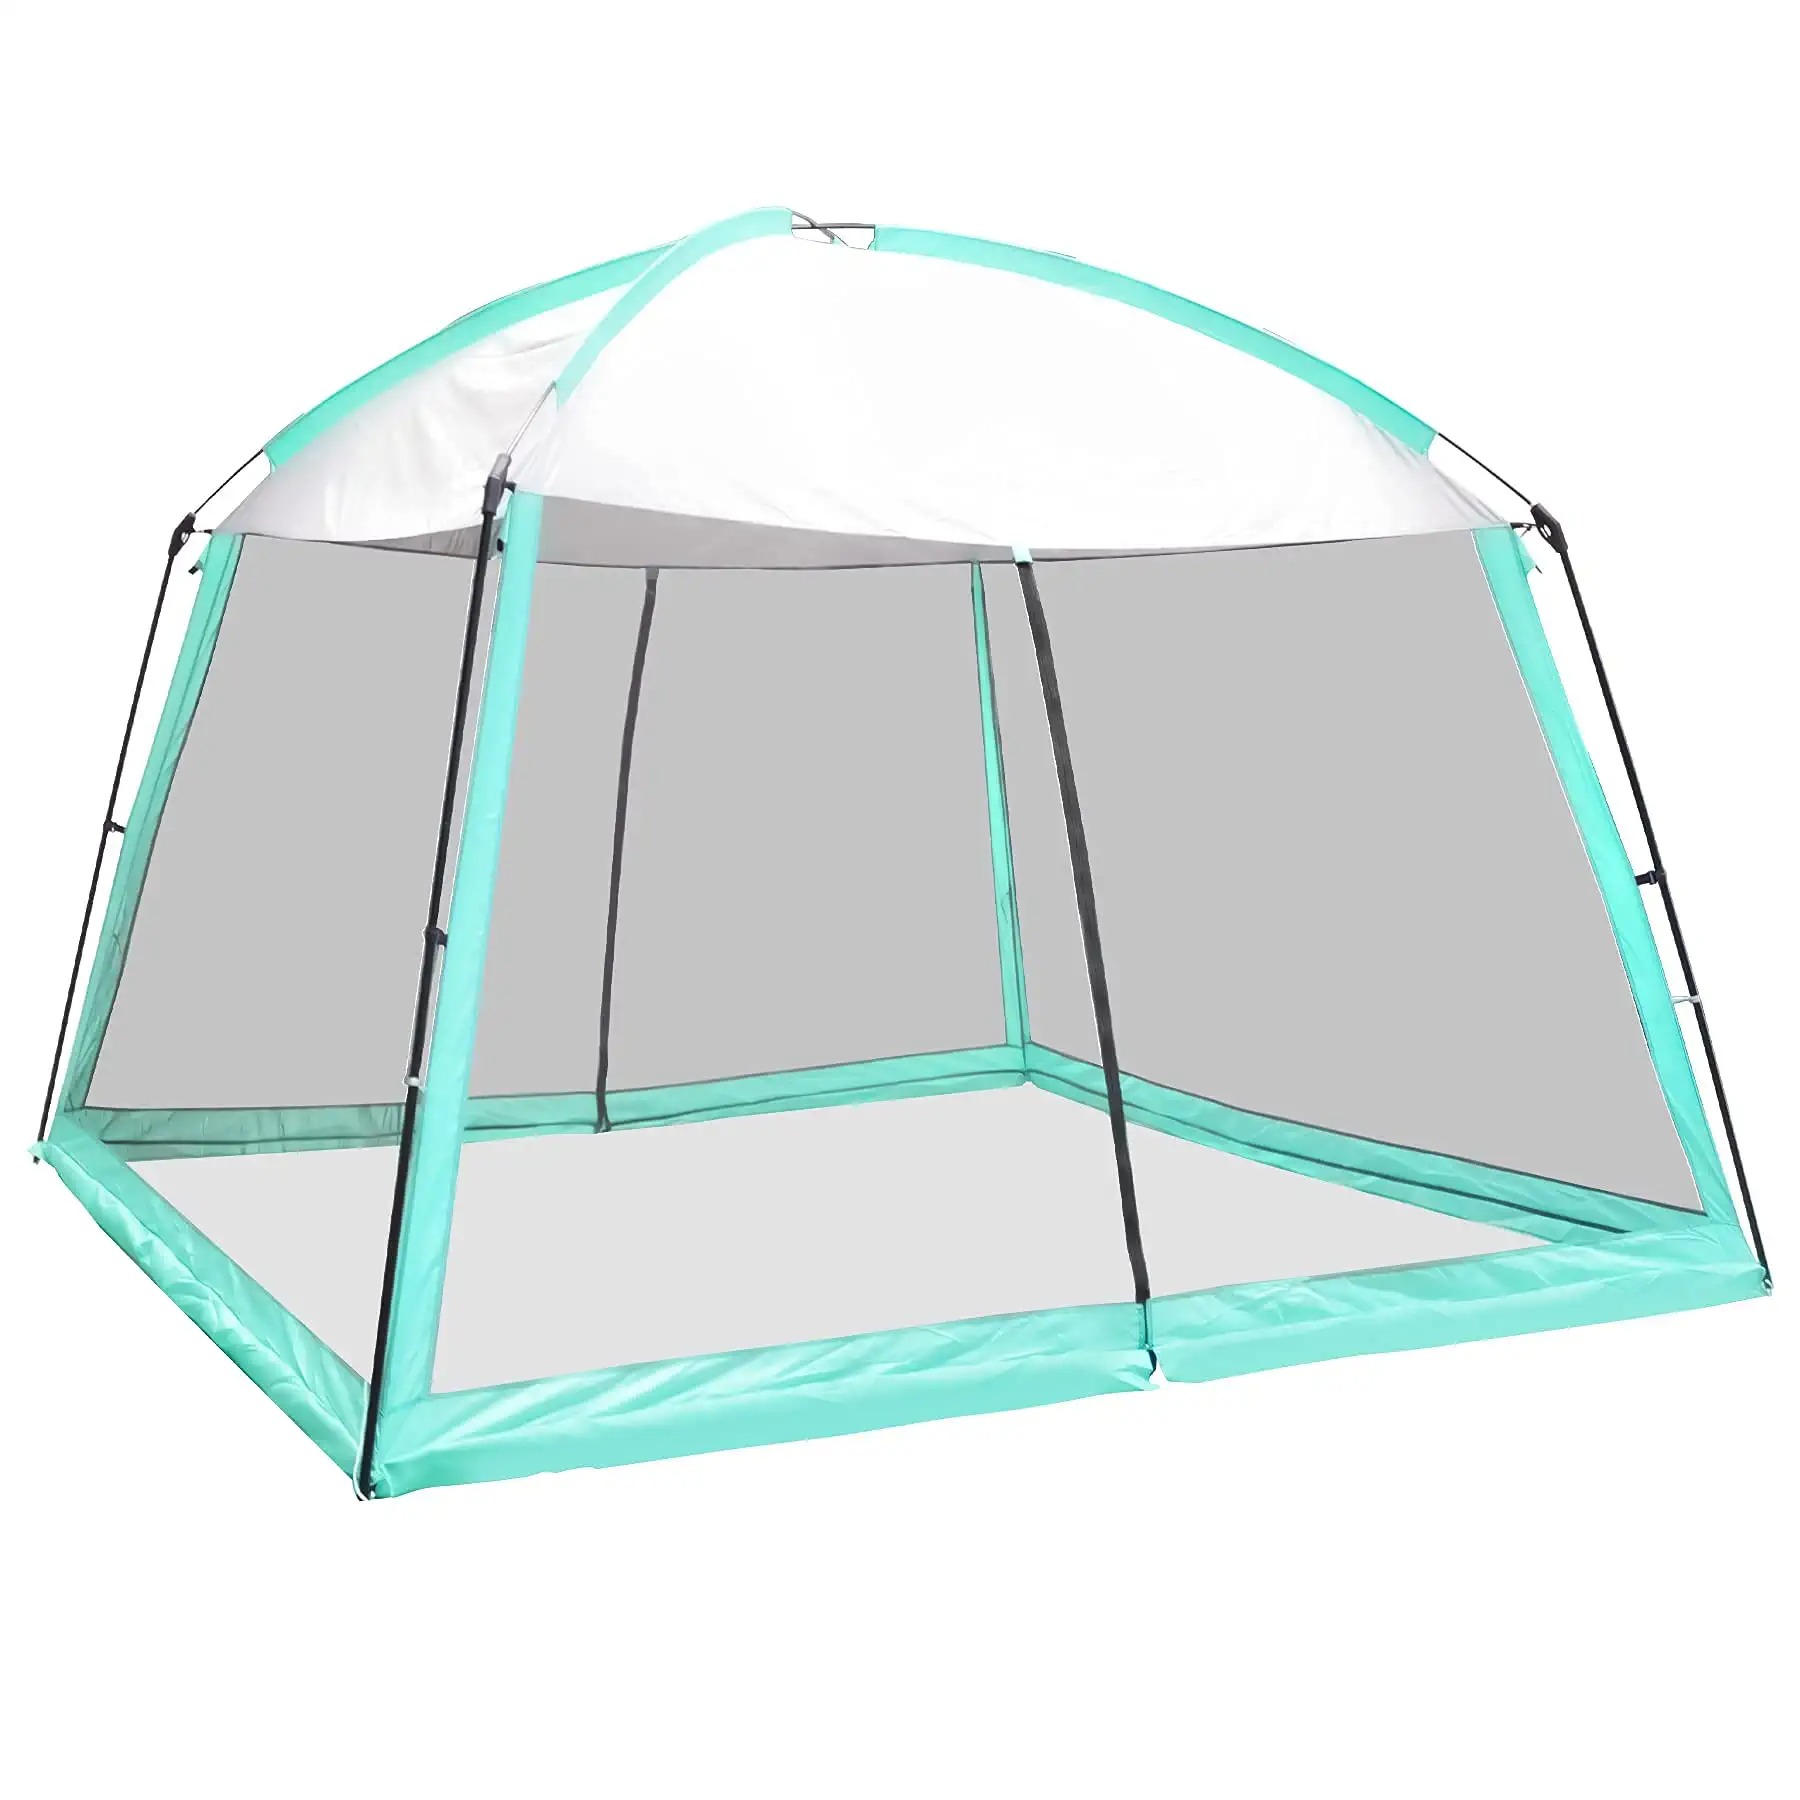 Caseta de malla de malla de malla de paret per acampar amb marquesina de tenda de campanya, apta per a càmping a l'aire lliure amb terrassa